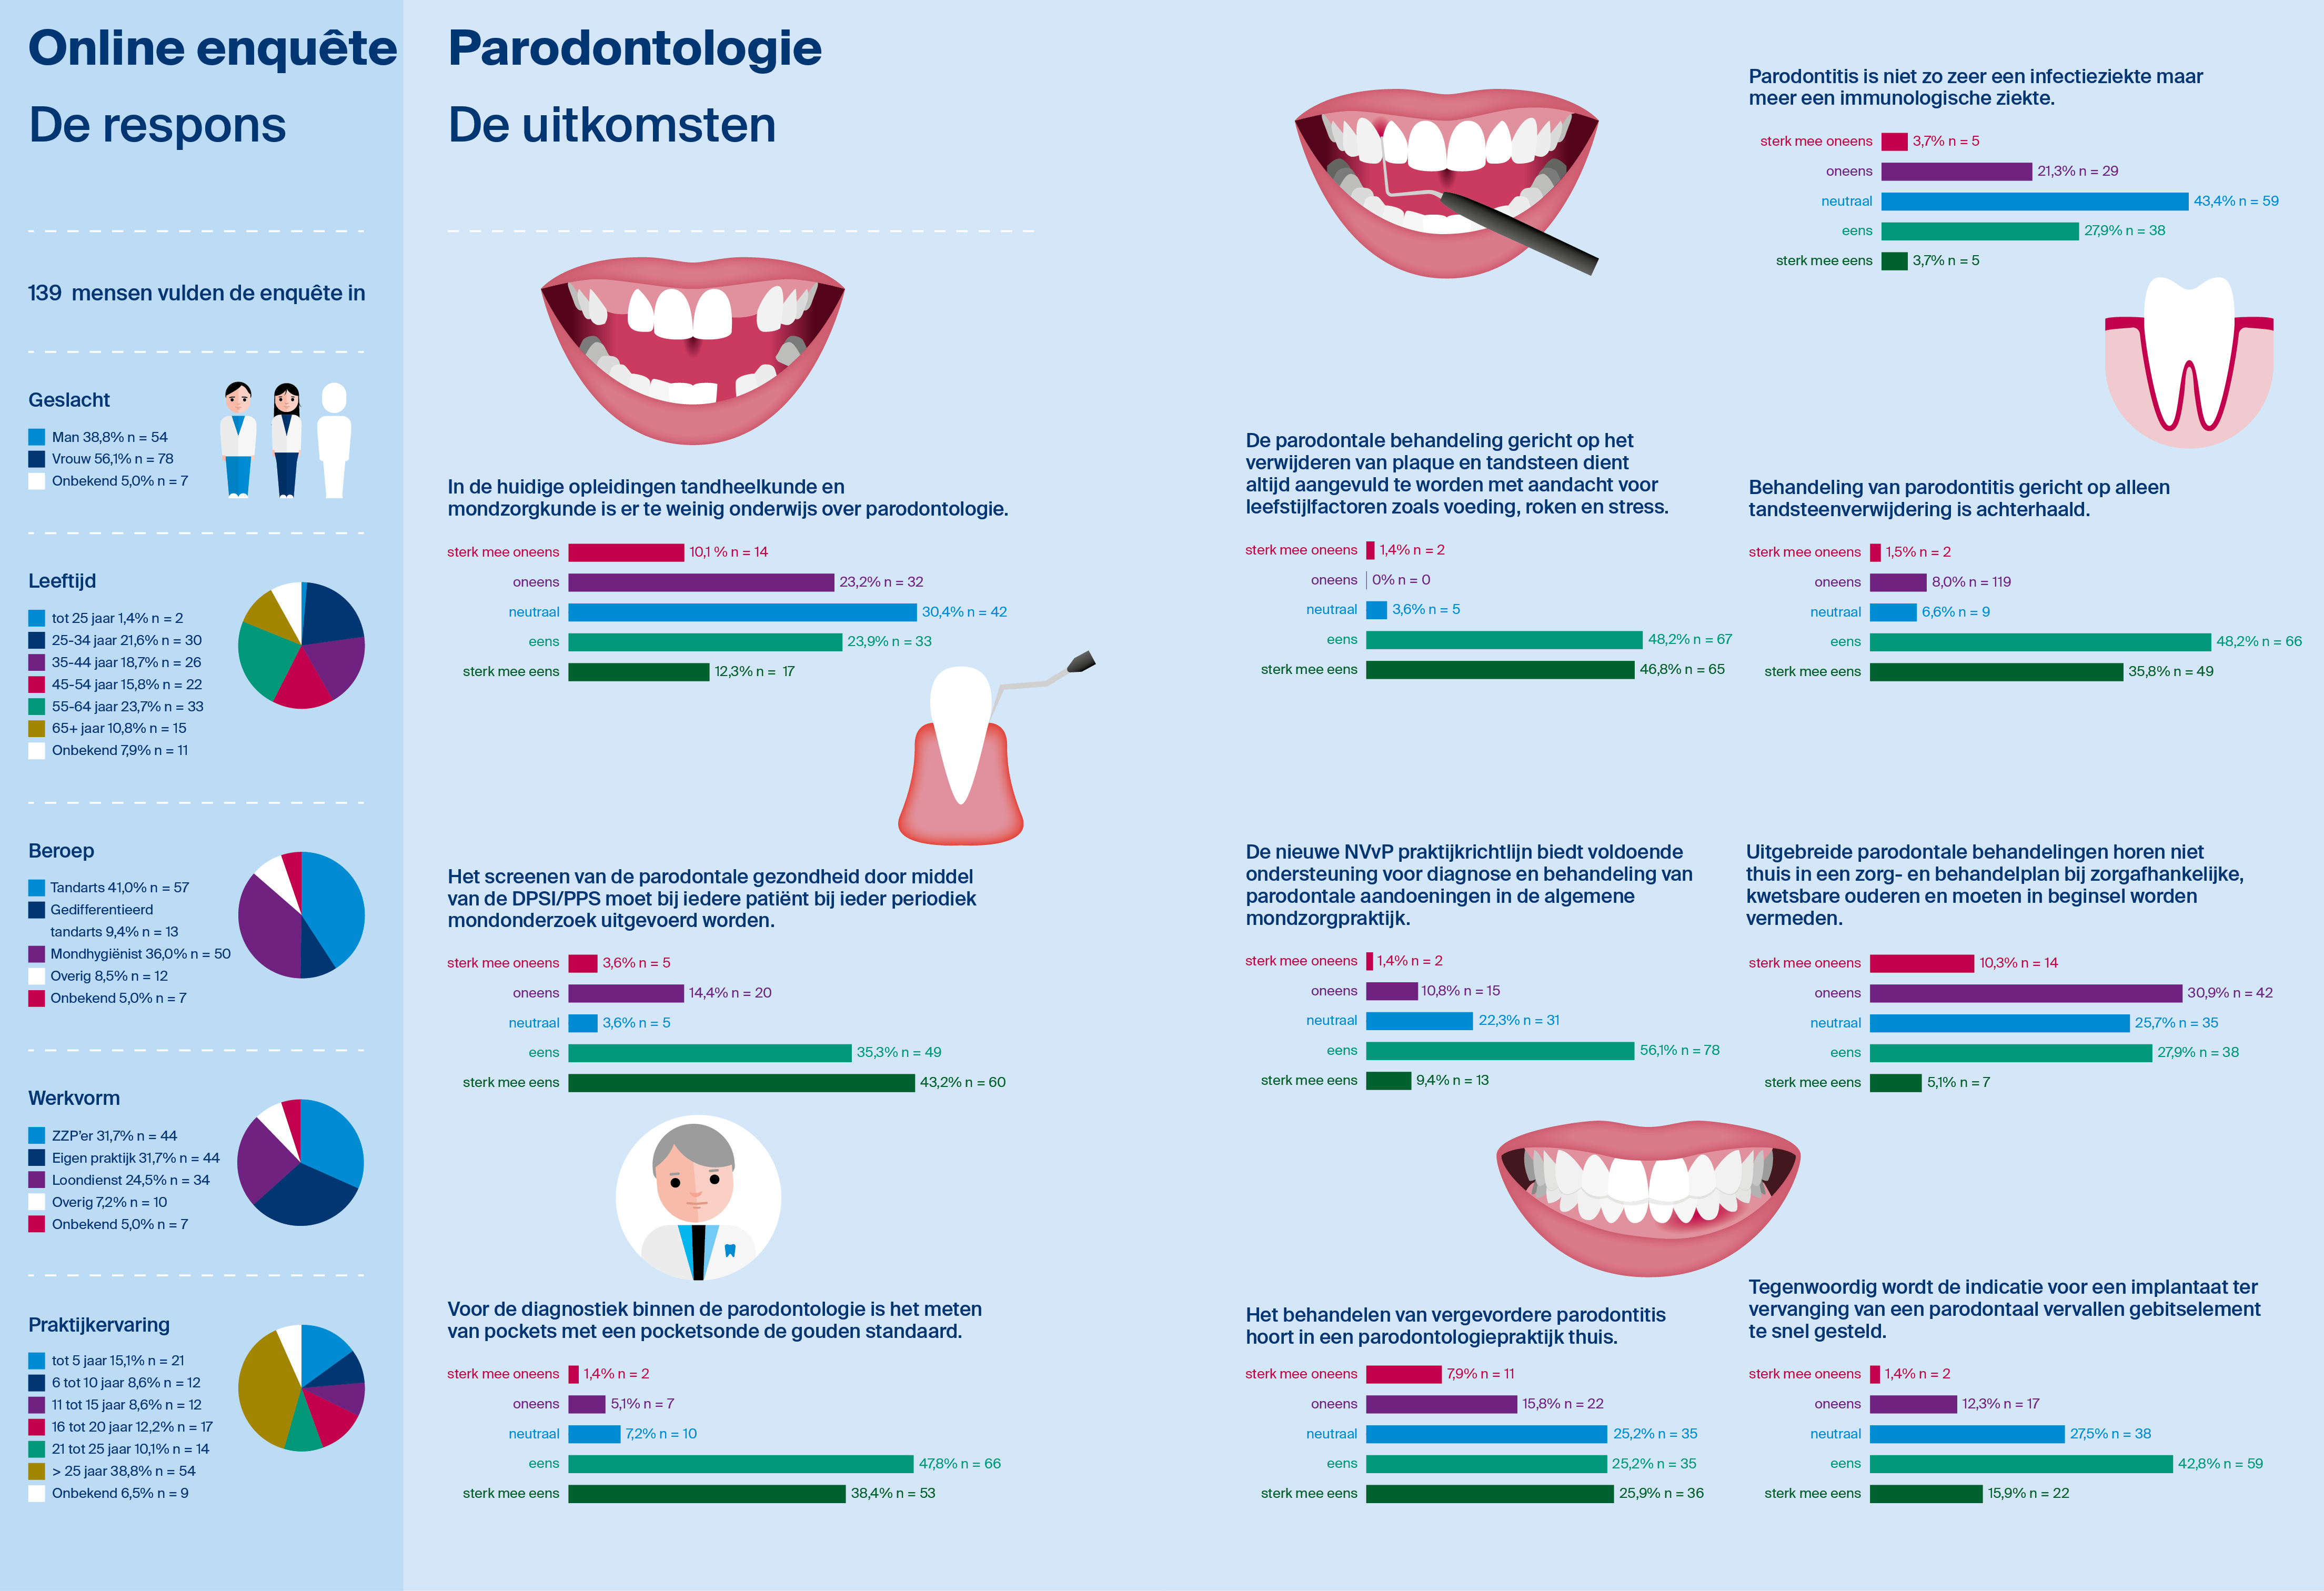 Online enquête Parodontologie